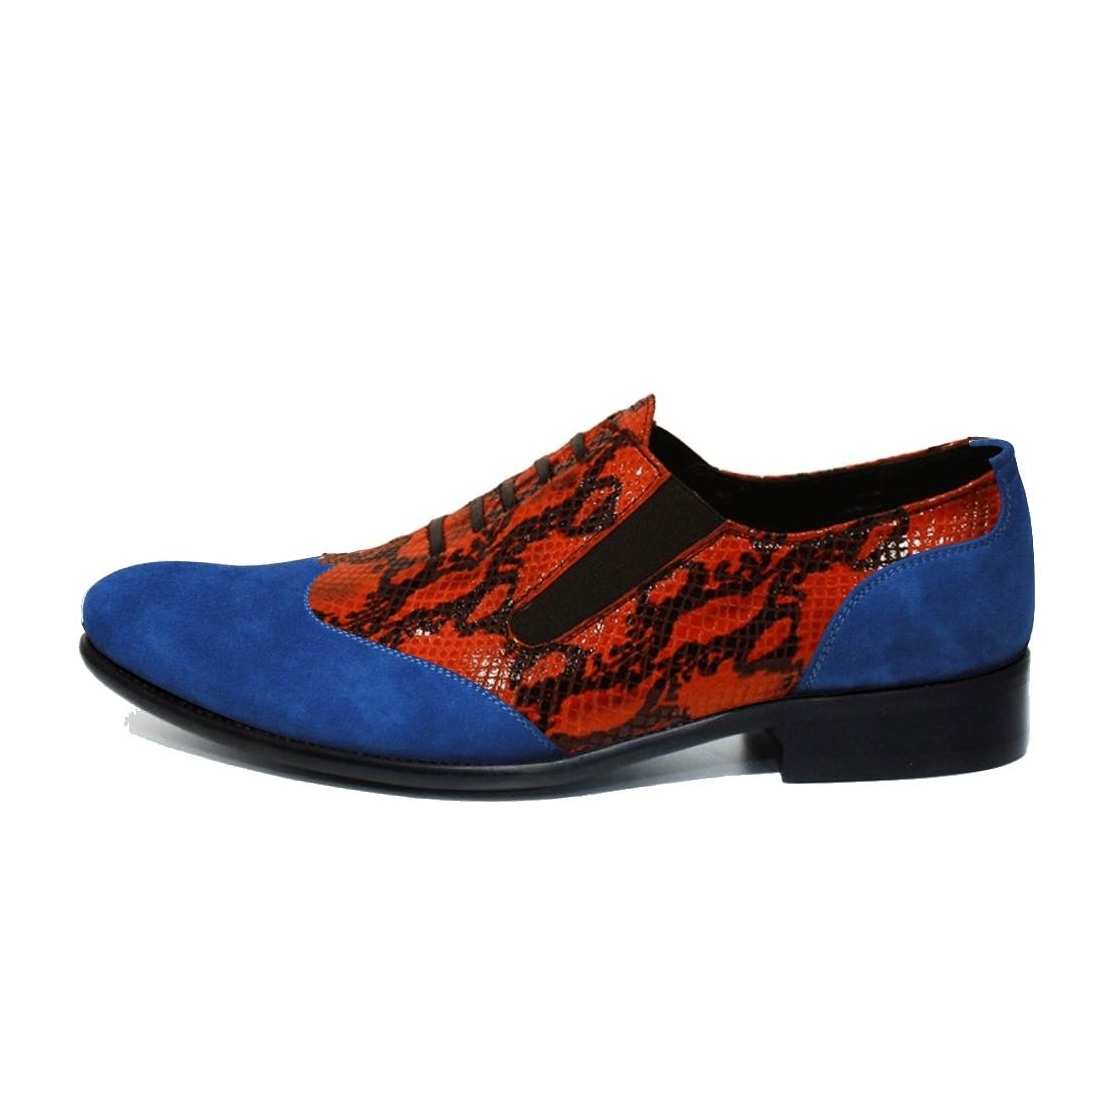 Modello Baccalto - Slipper - Handmade Colorful Italian Leather Shoes